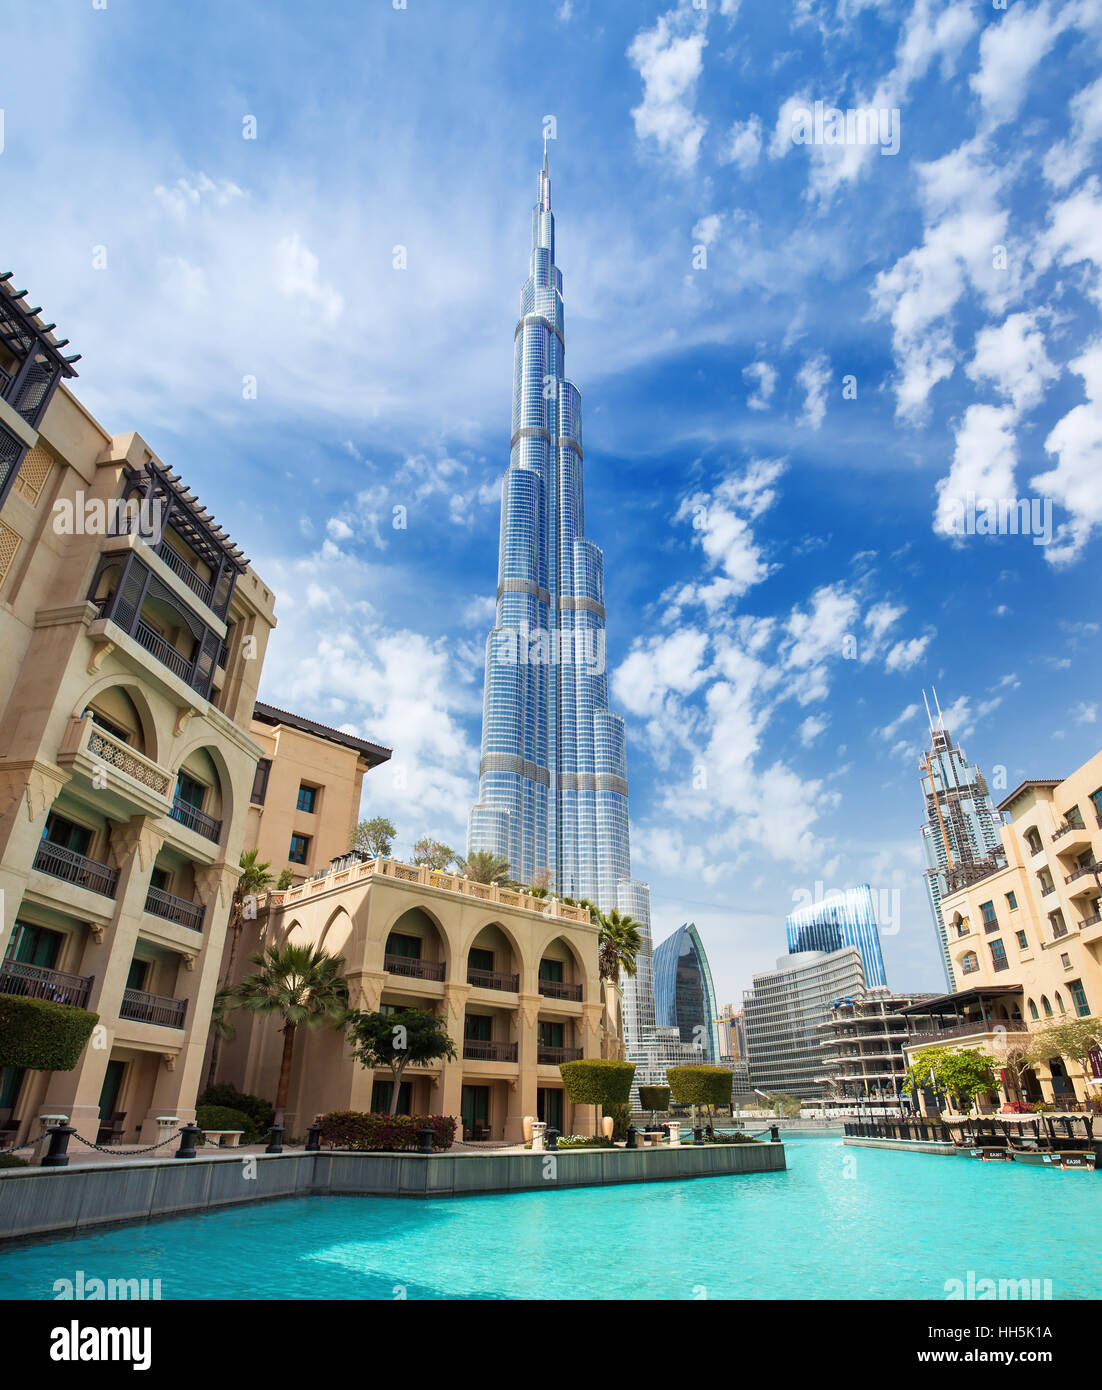 Centro financiero de Dubai, Emiratos Árabes Unidos al 29 de febrero de 2016: Ver en el Burj Khalifa (altitud 828 m) en el centro financiero de Dubai, Emiratos Árabes Unidos Foto de stock